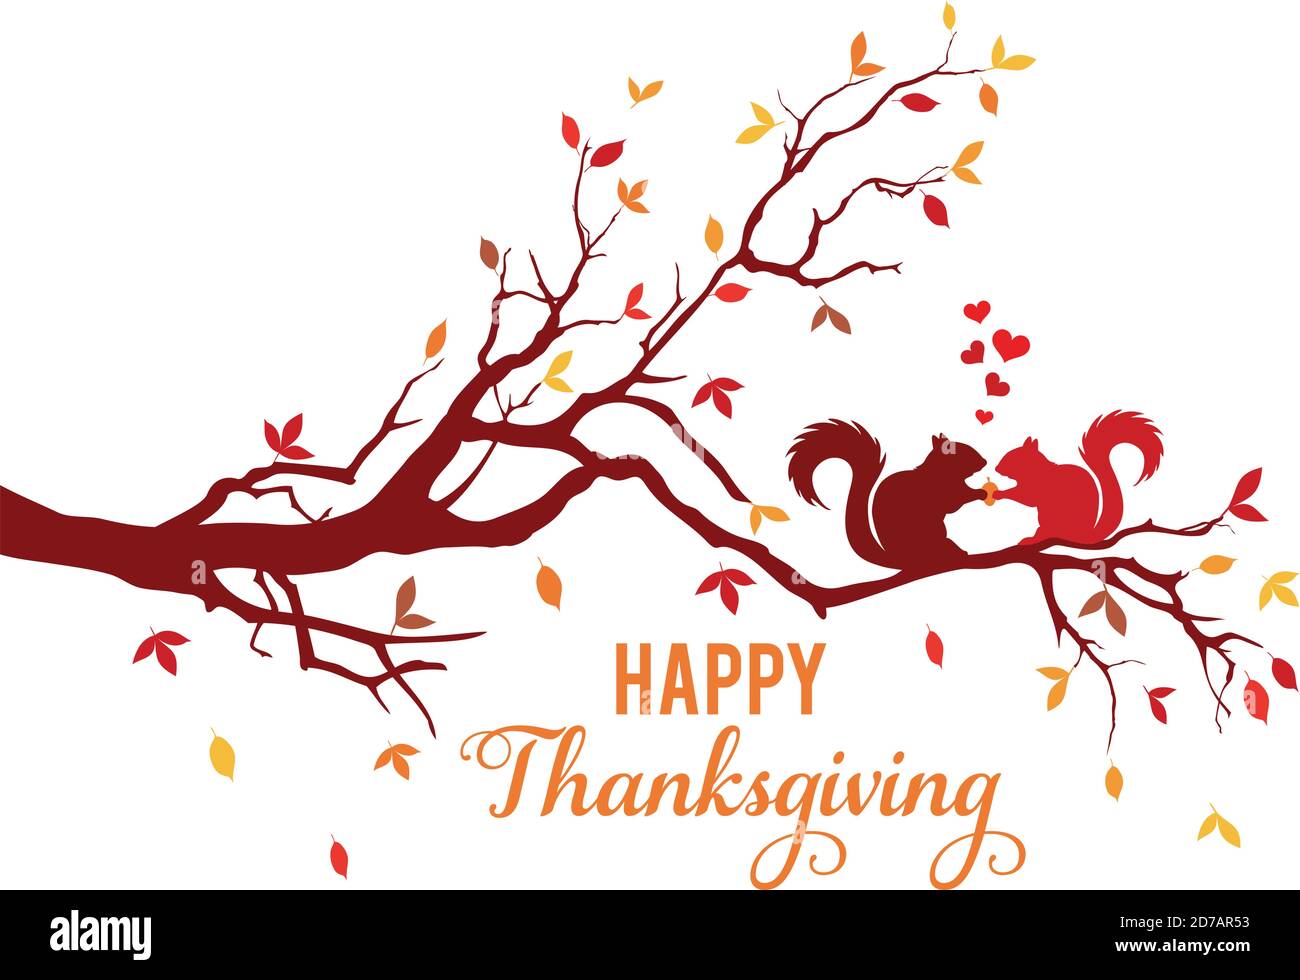 Carta di ringraziamento, ramo di albero con scoiattoli e foglie d'autunno colorate, illustrazione vettoriale Illustrazione Vettoriale